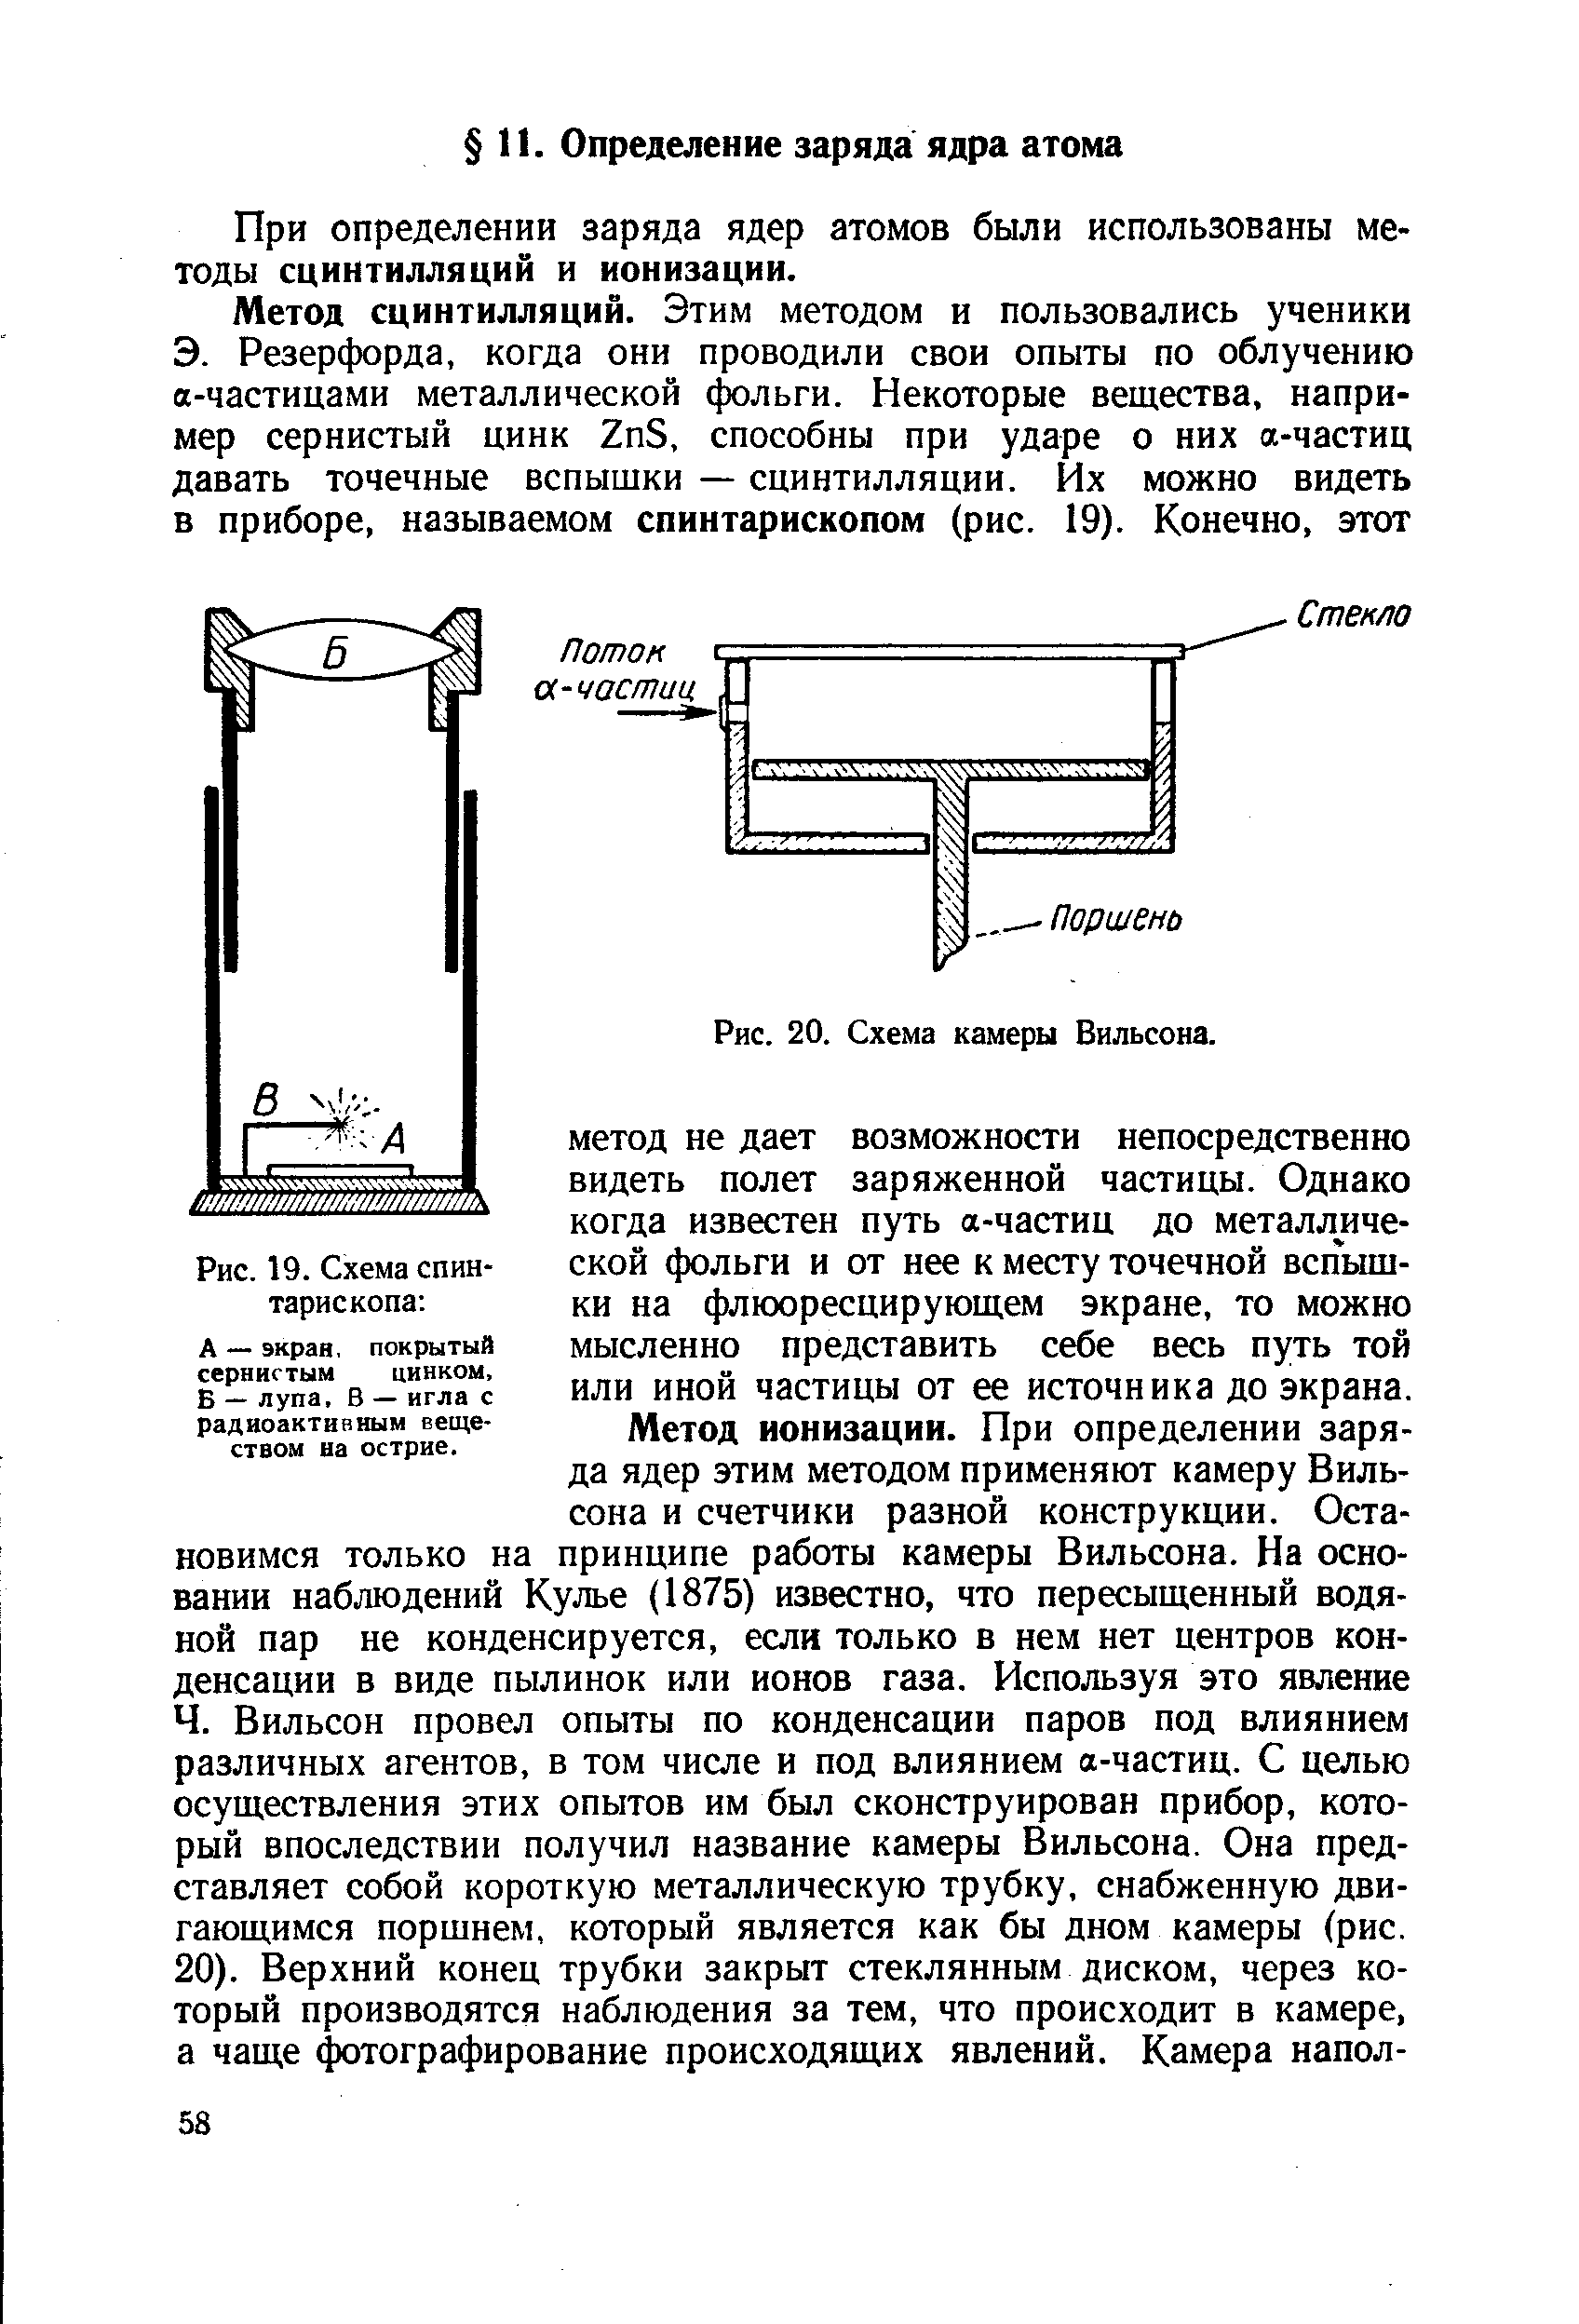 При определении заряда ядер атомов были использованы методы сцинтилляций и ионизации.